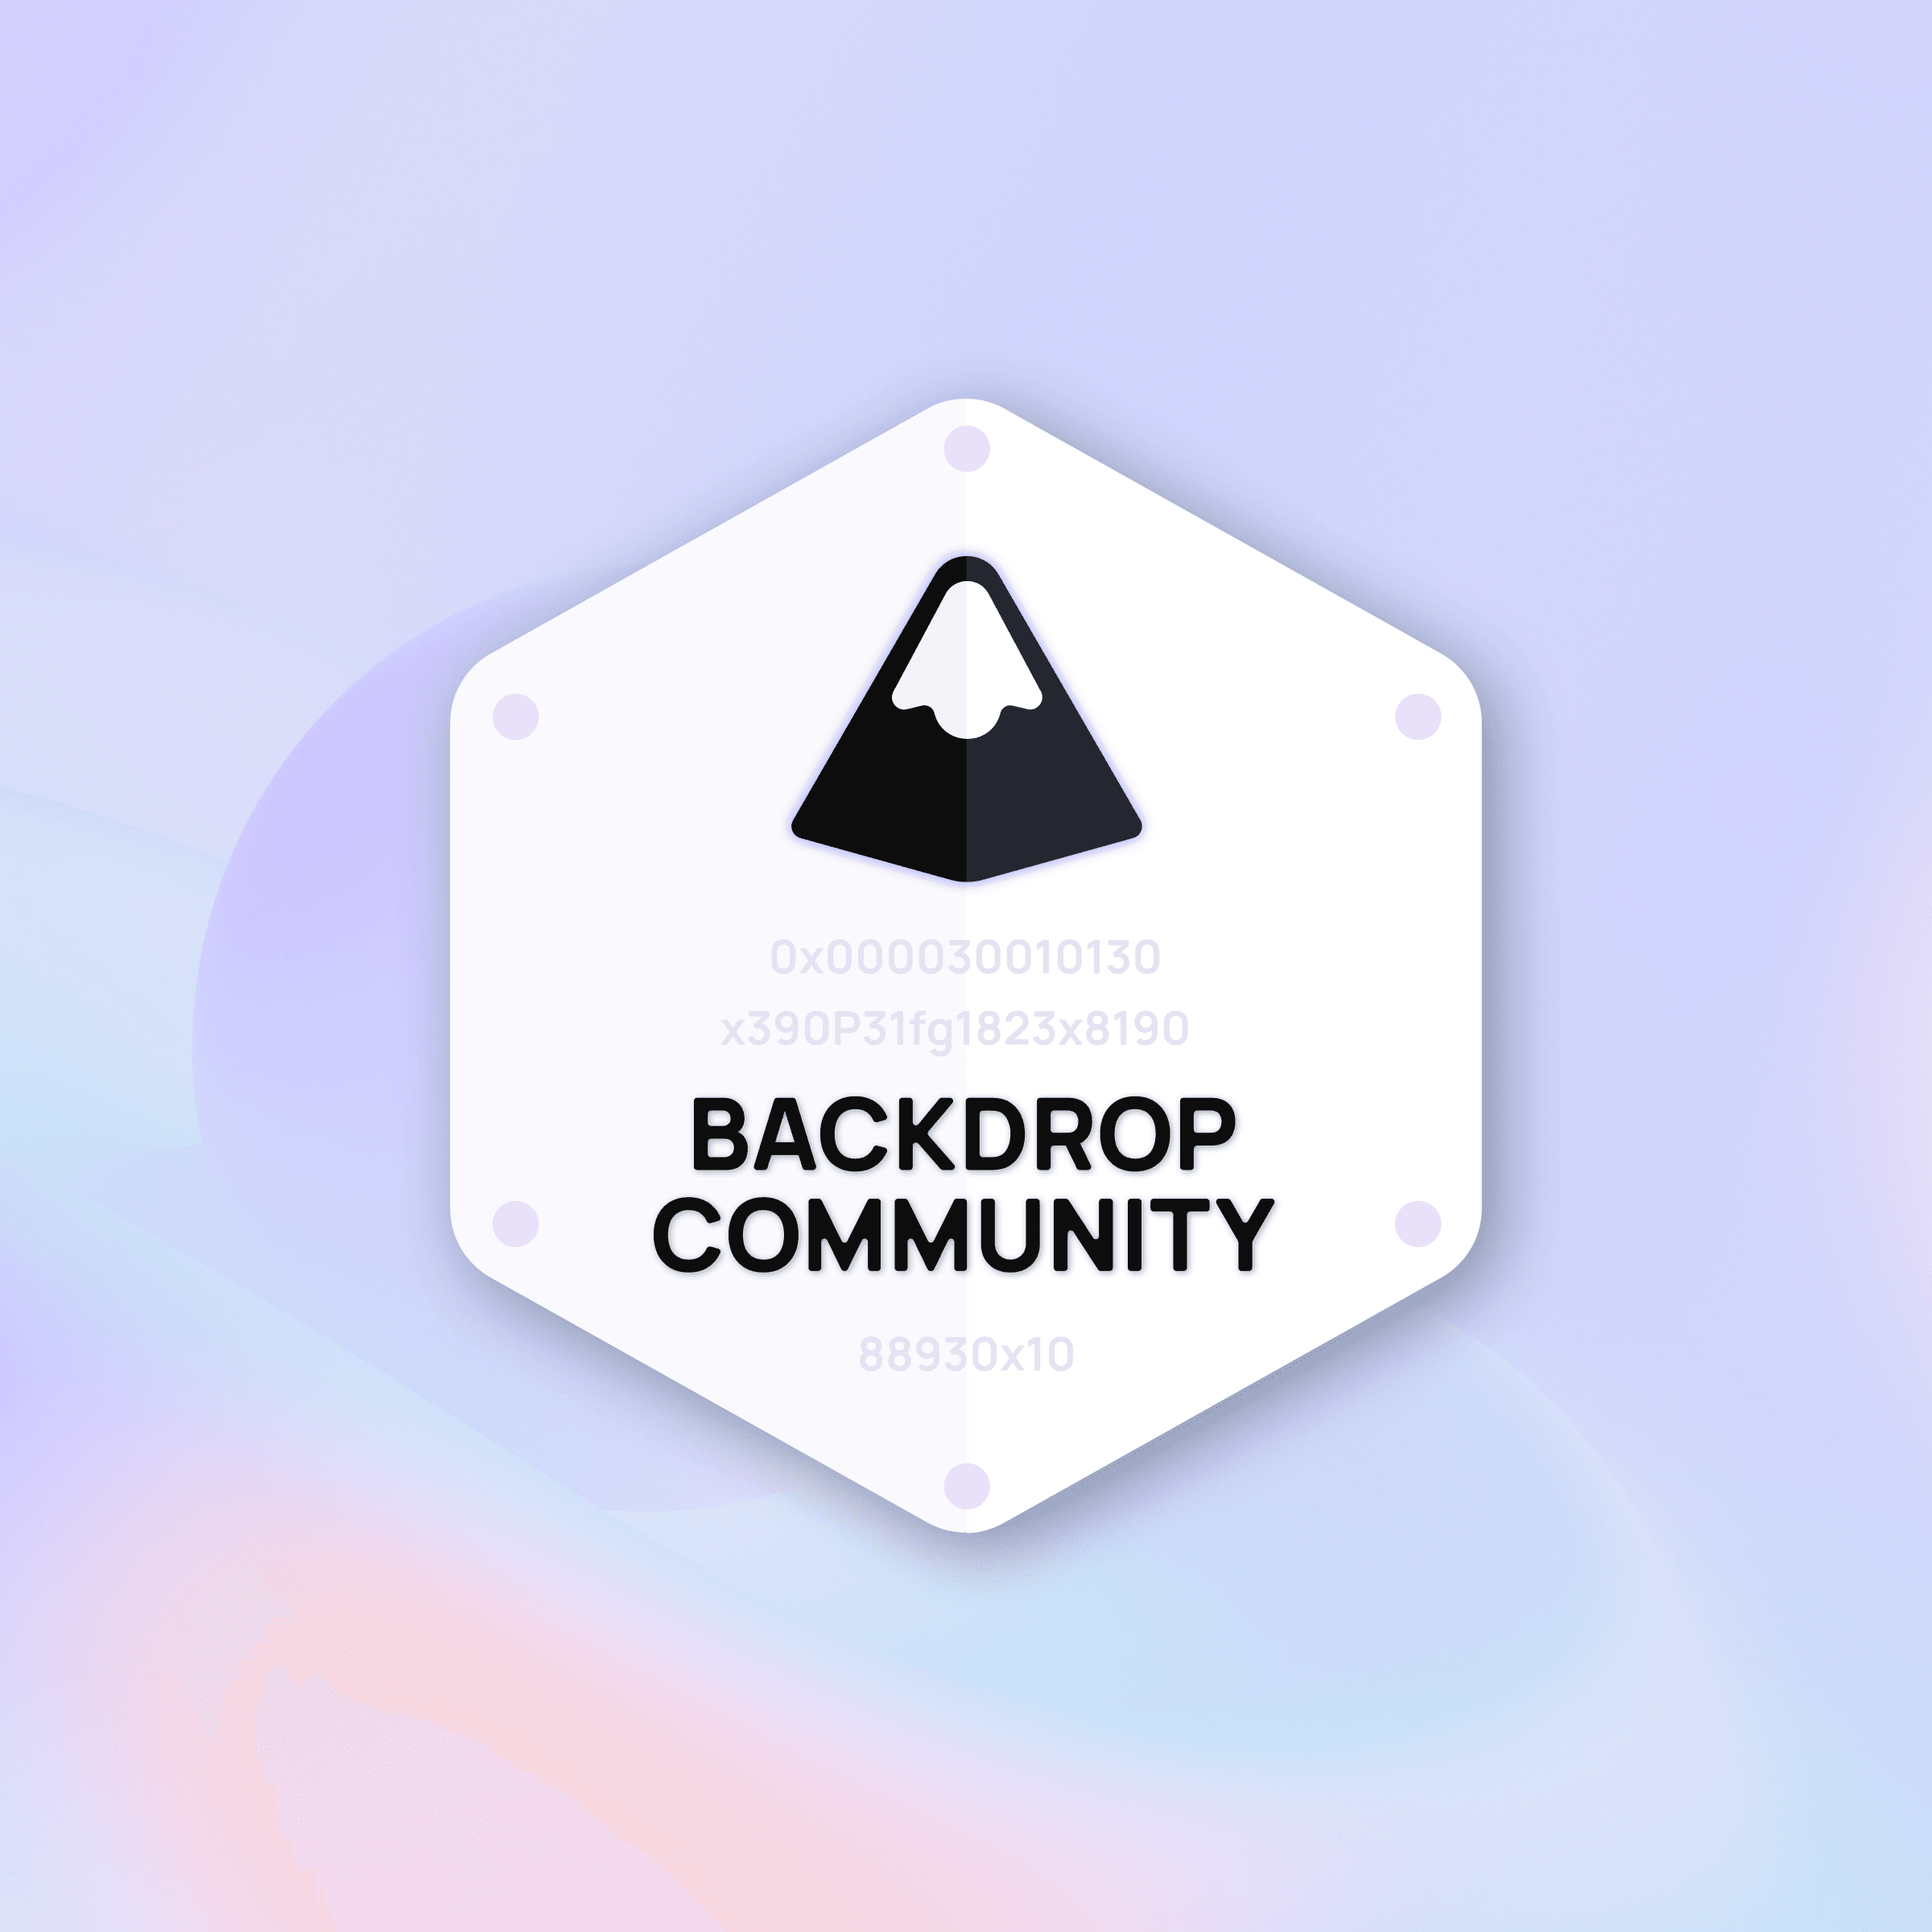 Backdrop Community Membership